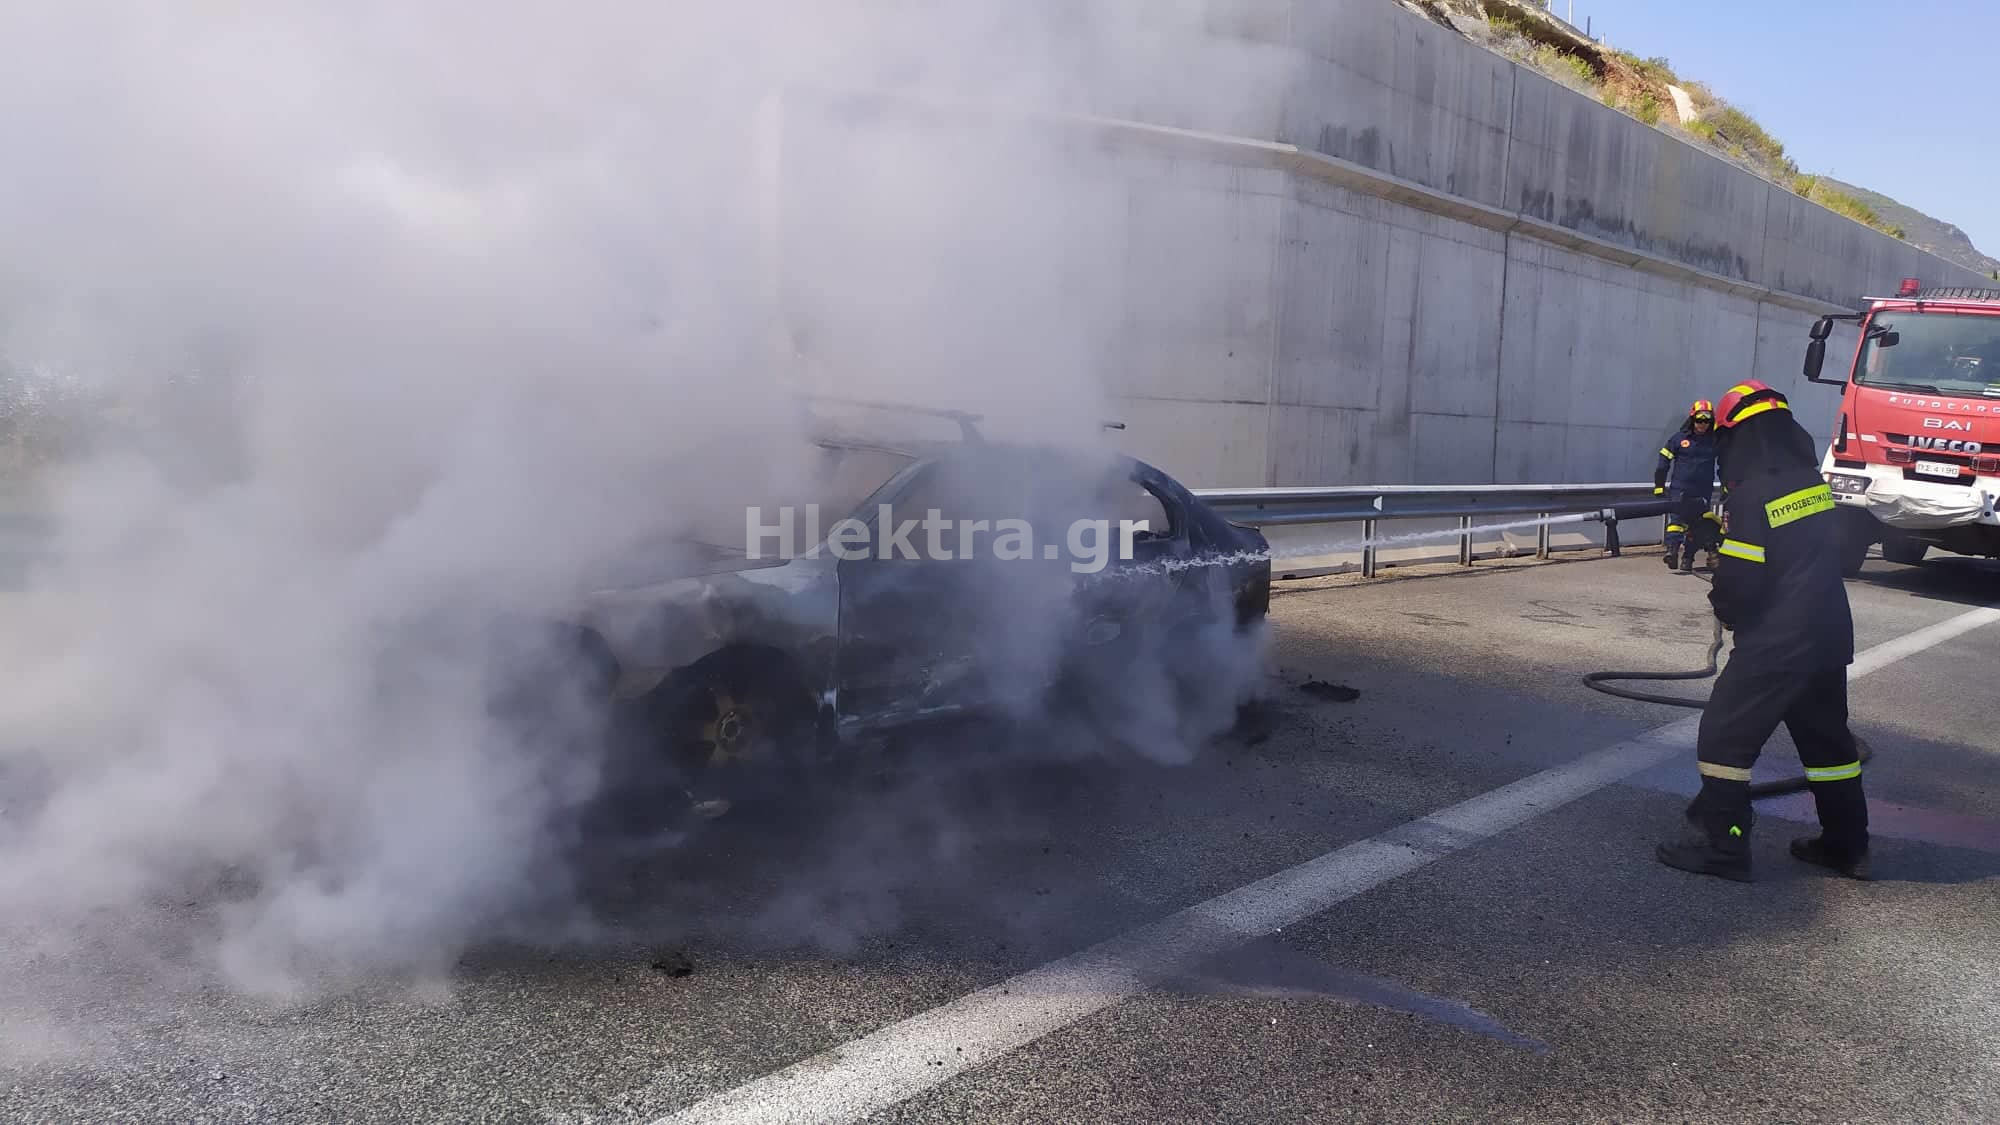 Πυρκαγιά σε όχημα στην Εθνική Οδό - Λαμπάδιασε στη μέση του δρόμου - ΚΟΡΙΝΘΙΑ